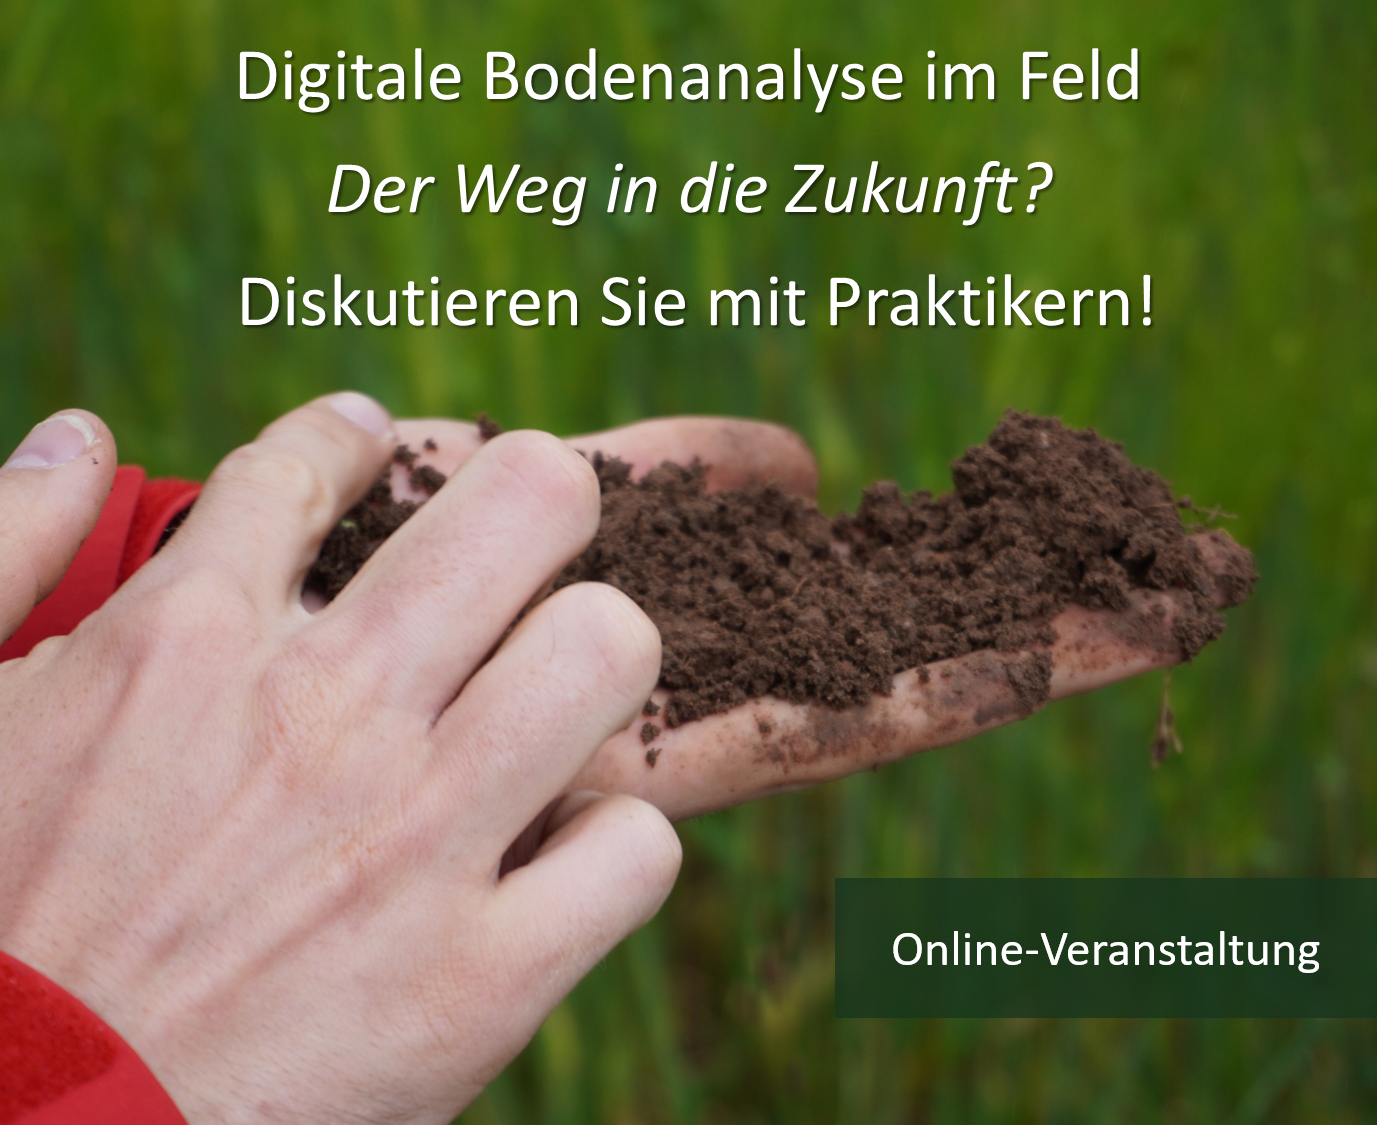 You are currently viewing Digitale Bodenanalyse im Feld – der Weg in die Zukunft? Diskutieren Sie mit Praktikern!